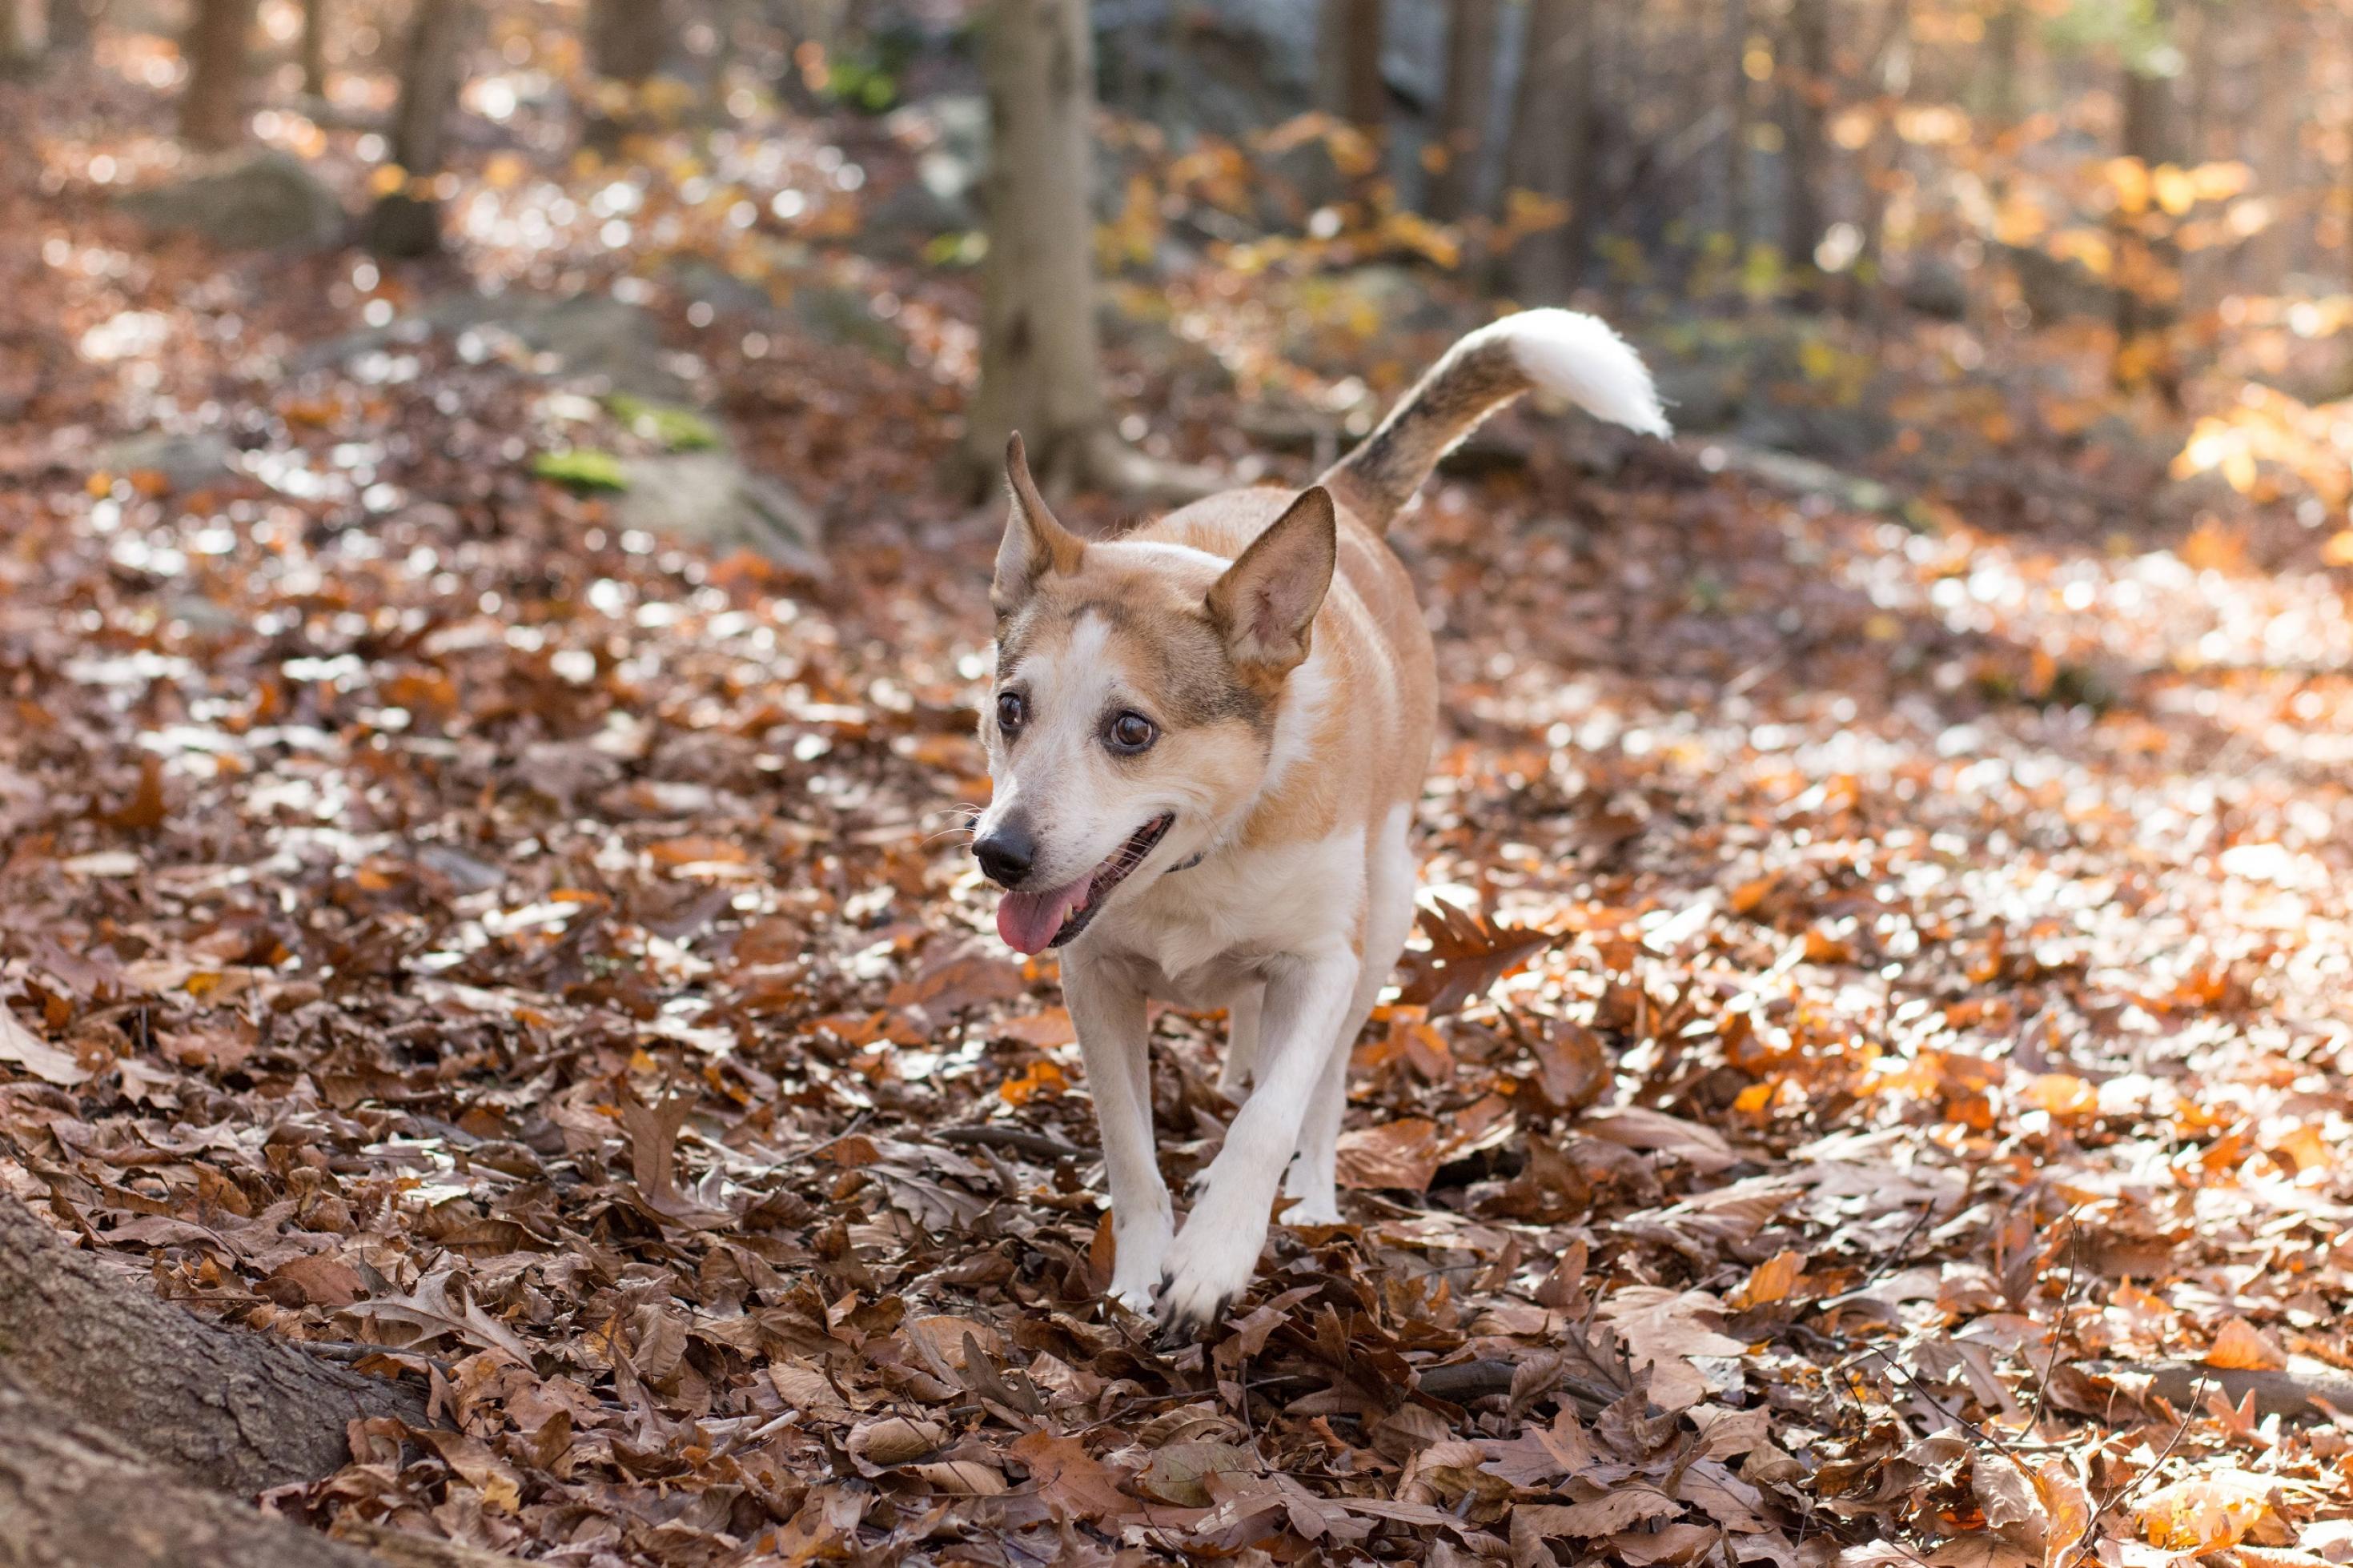 Ein mittelgroßer Hund mit hellbeigem und weißem Fell läuft über einen laubbedeckten Waldboden.